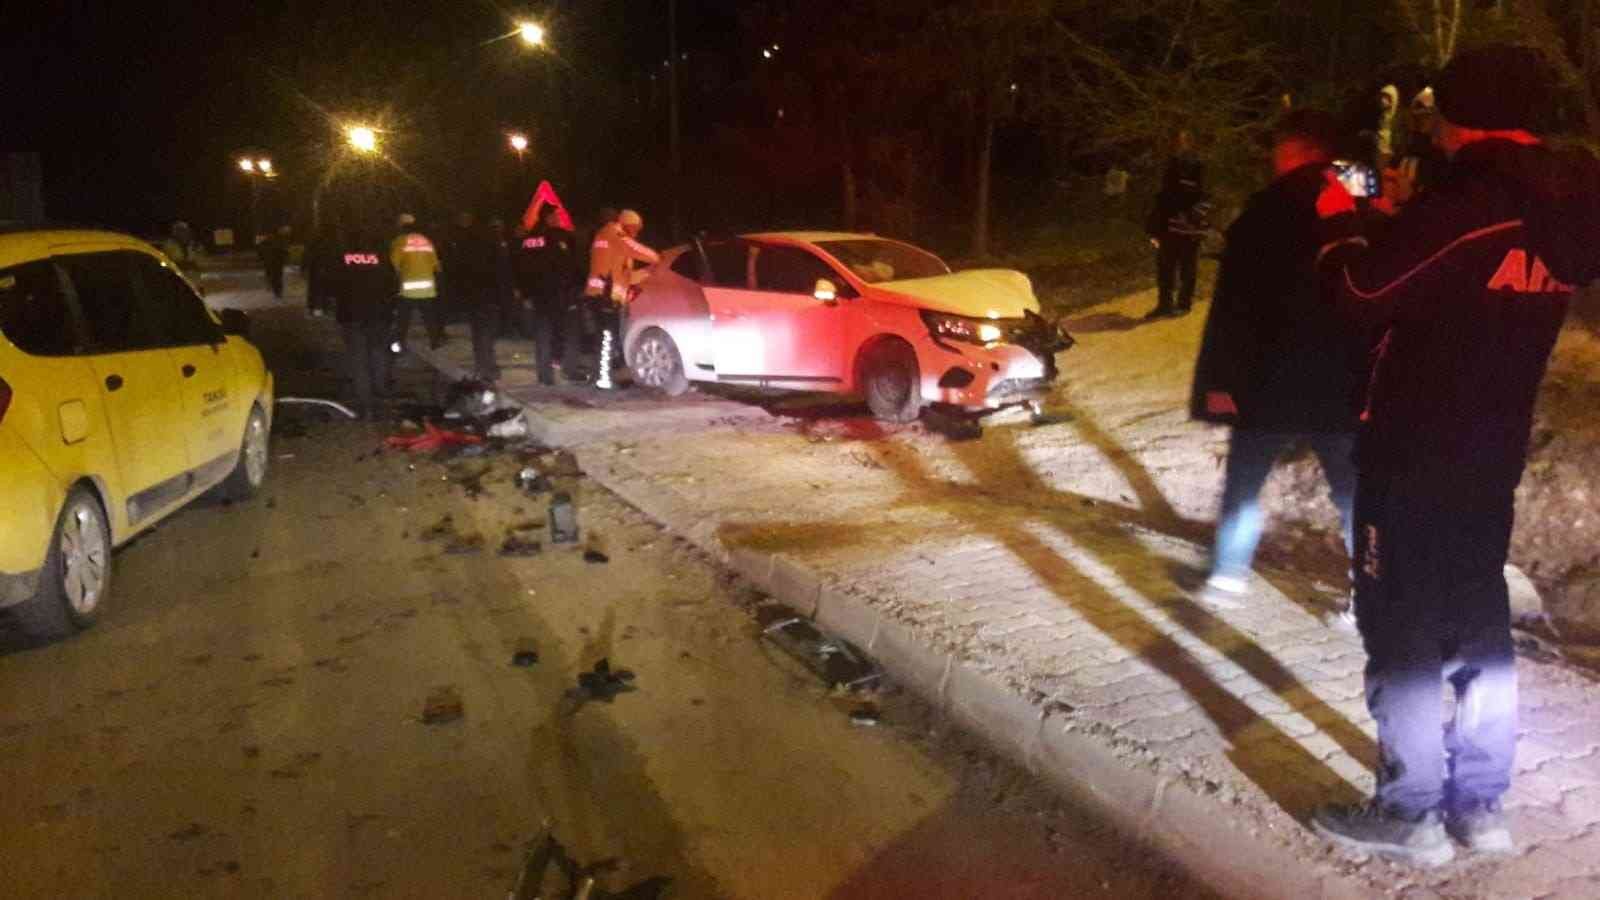 Bayburt’ta 3 aracın karıştığı kazada 4 kişi yaralandı #bayburt